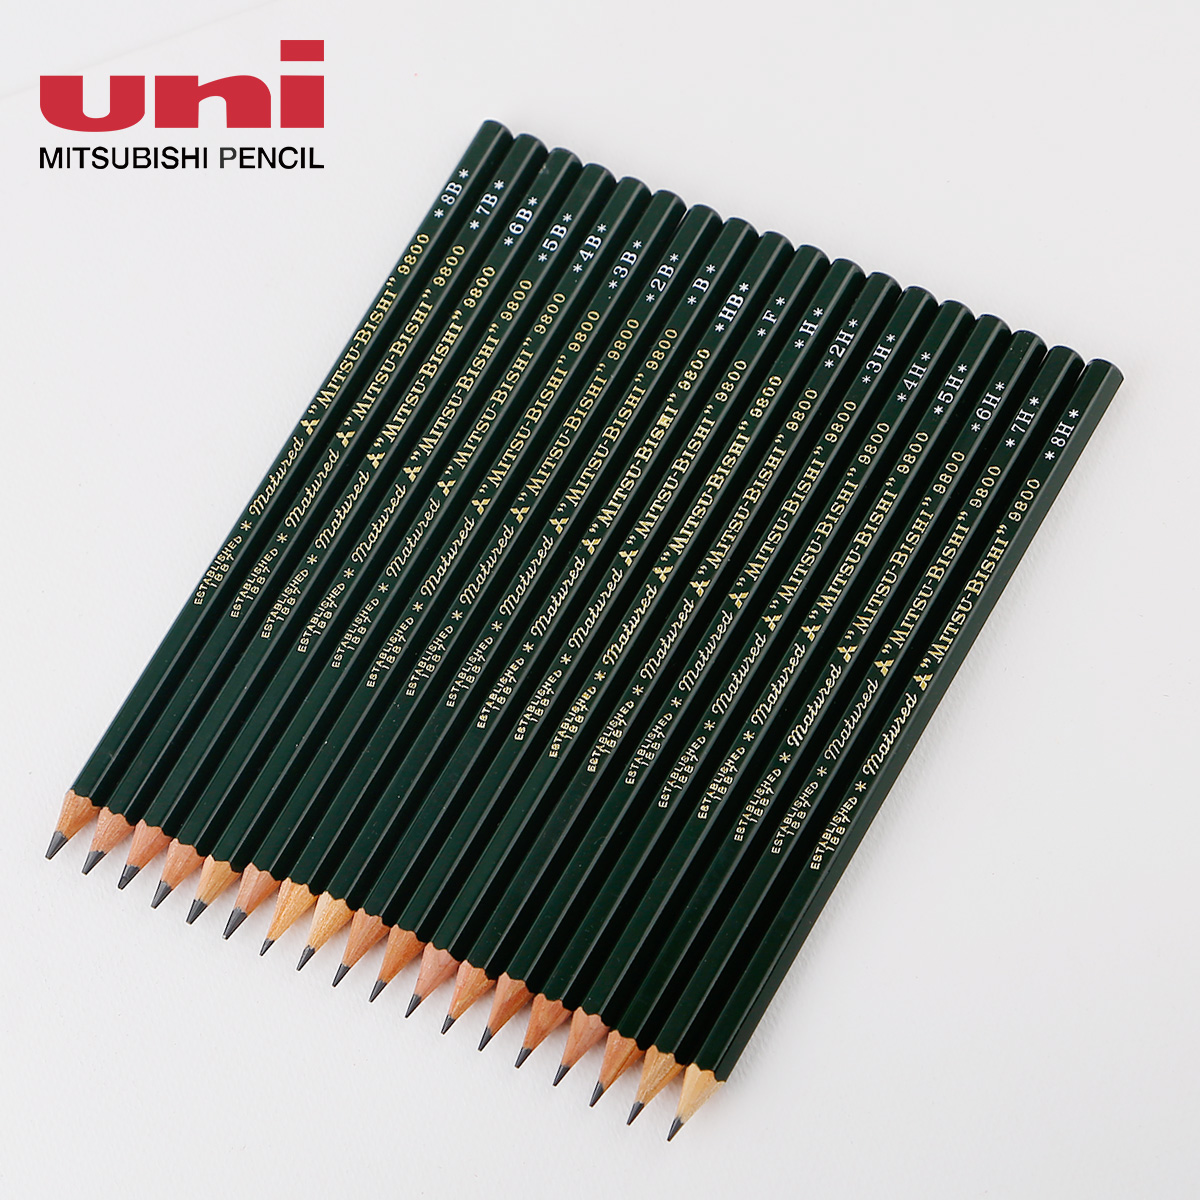 三菱9800绘图铅笔 UNI三菱测试铅笔 绘画铅笔 素描铅笔多灰度